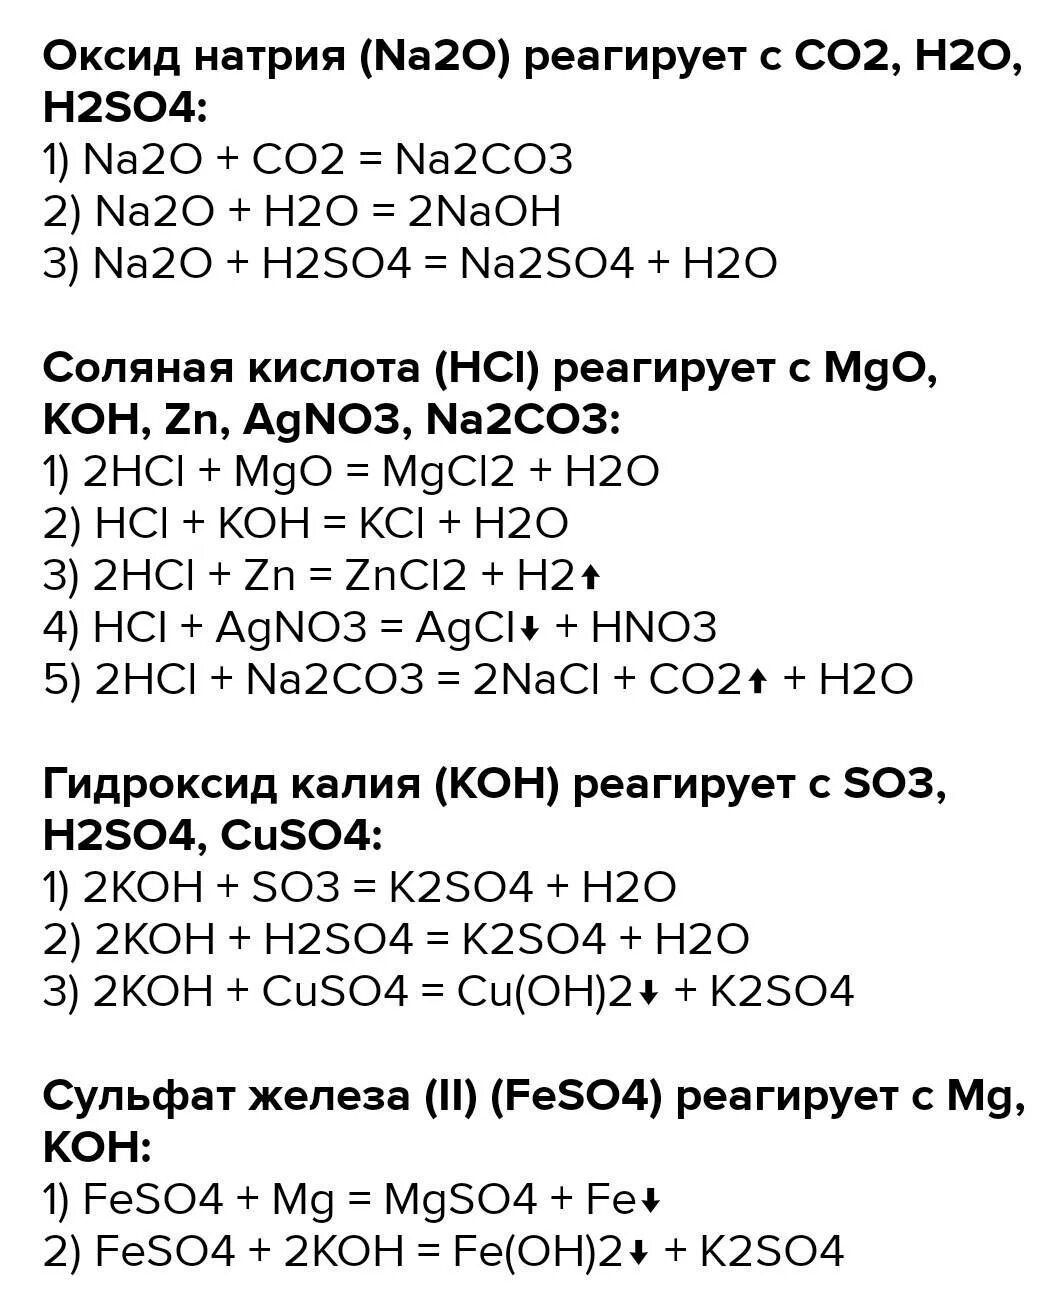 Реакция h2s+na. K+h2so4 уравнение химической реакции. Na2co3 реакция. Koh уравнение реакции. So3 реагирует с оксидом натрия